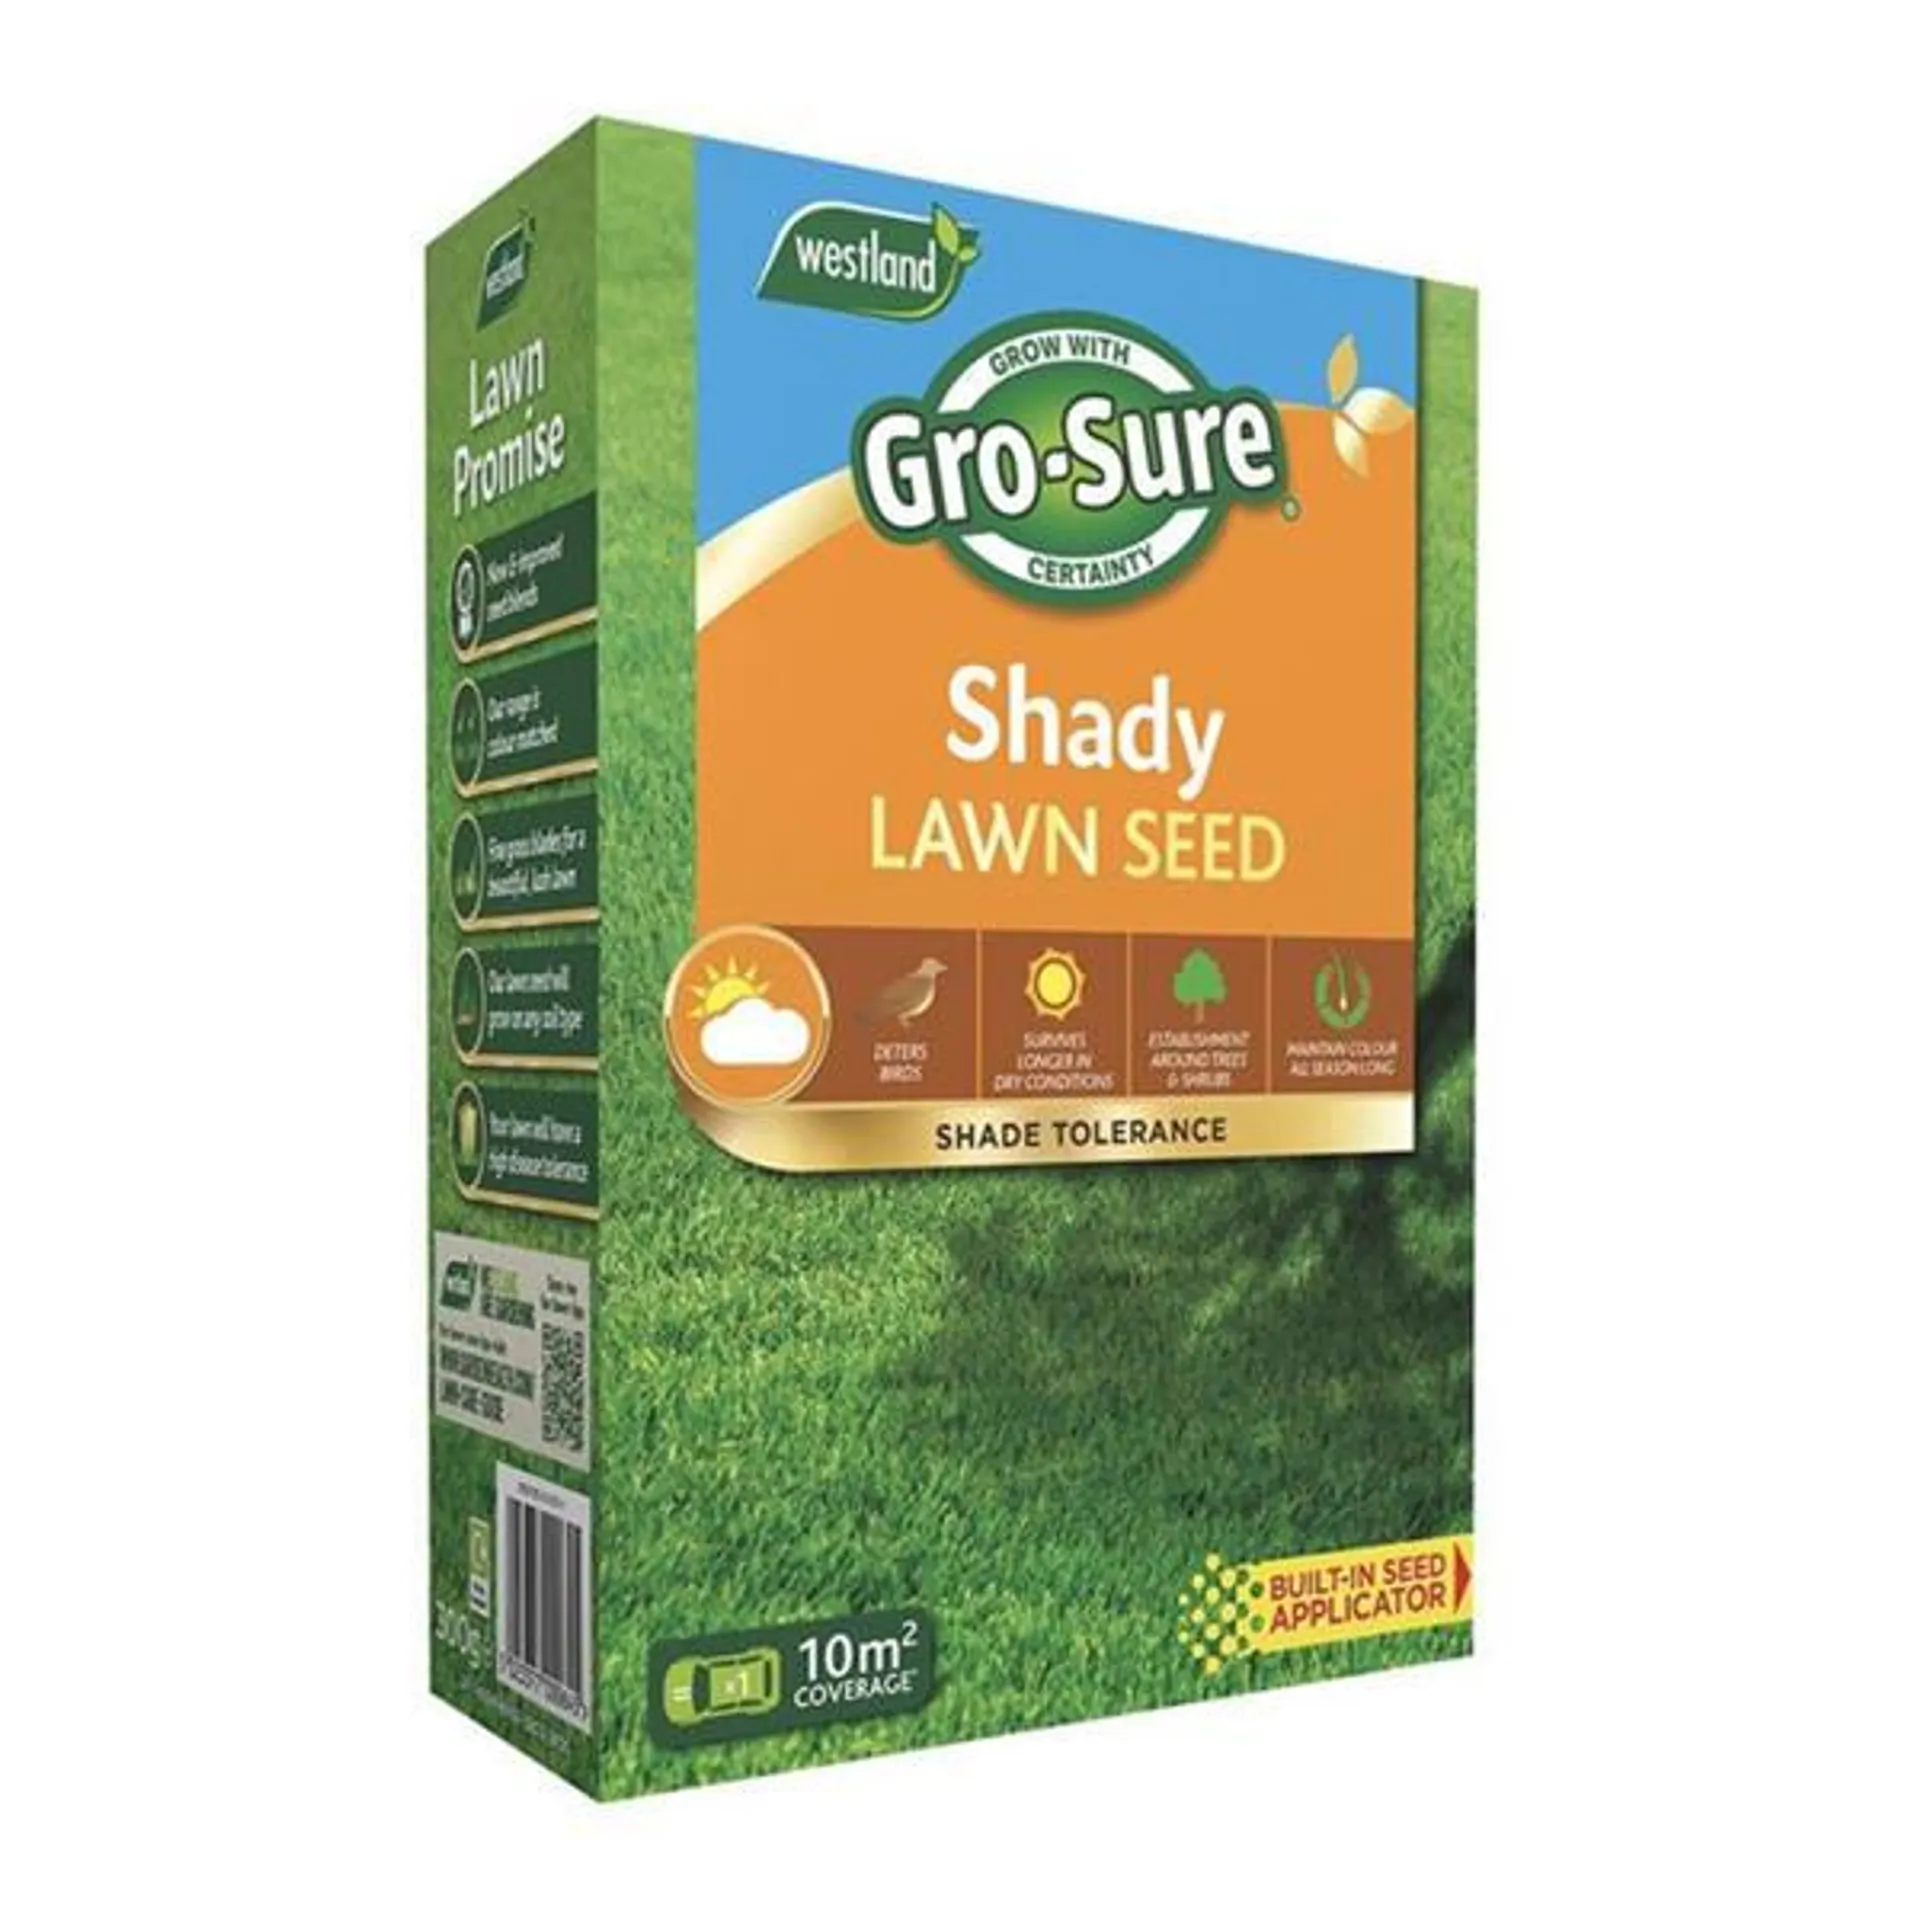 Gro-Sure Shady Lawn Seed Box 10Sq.M